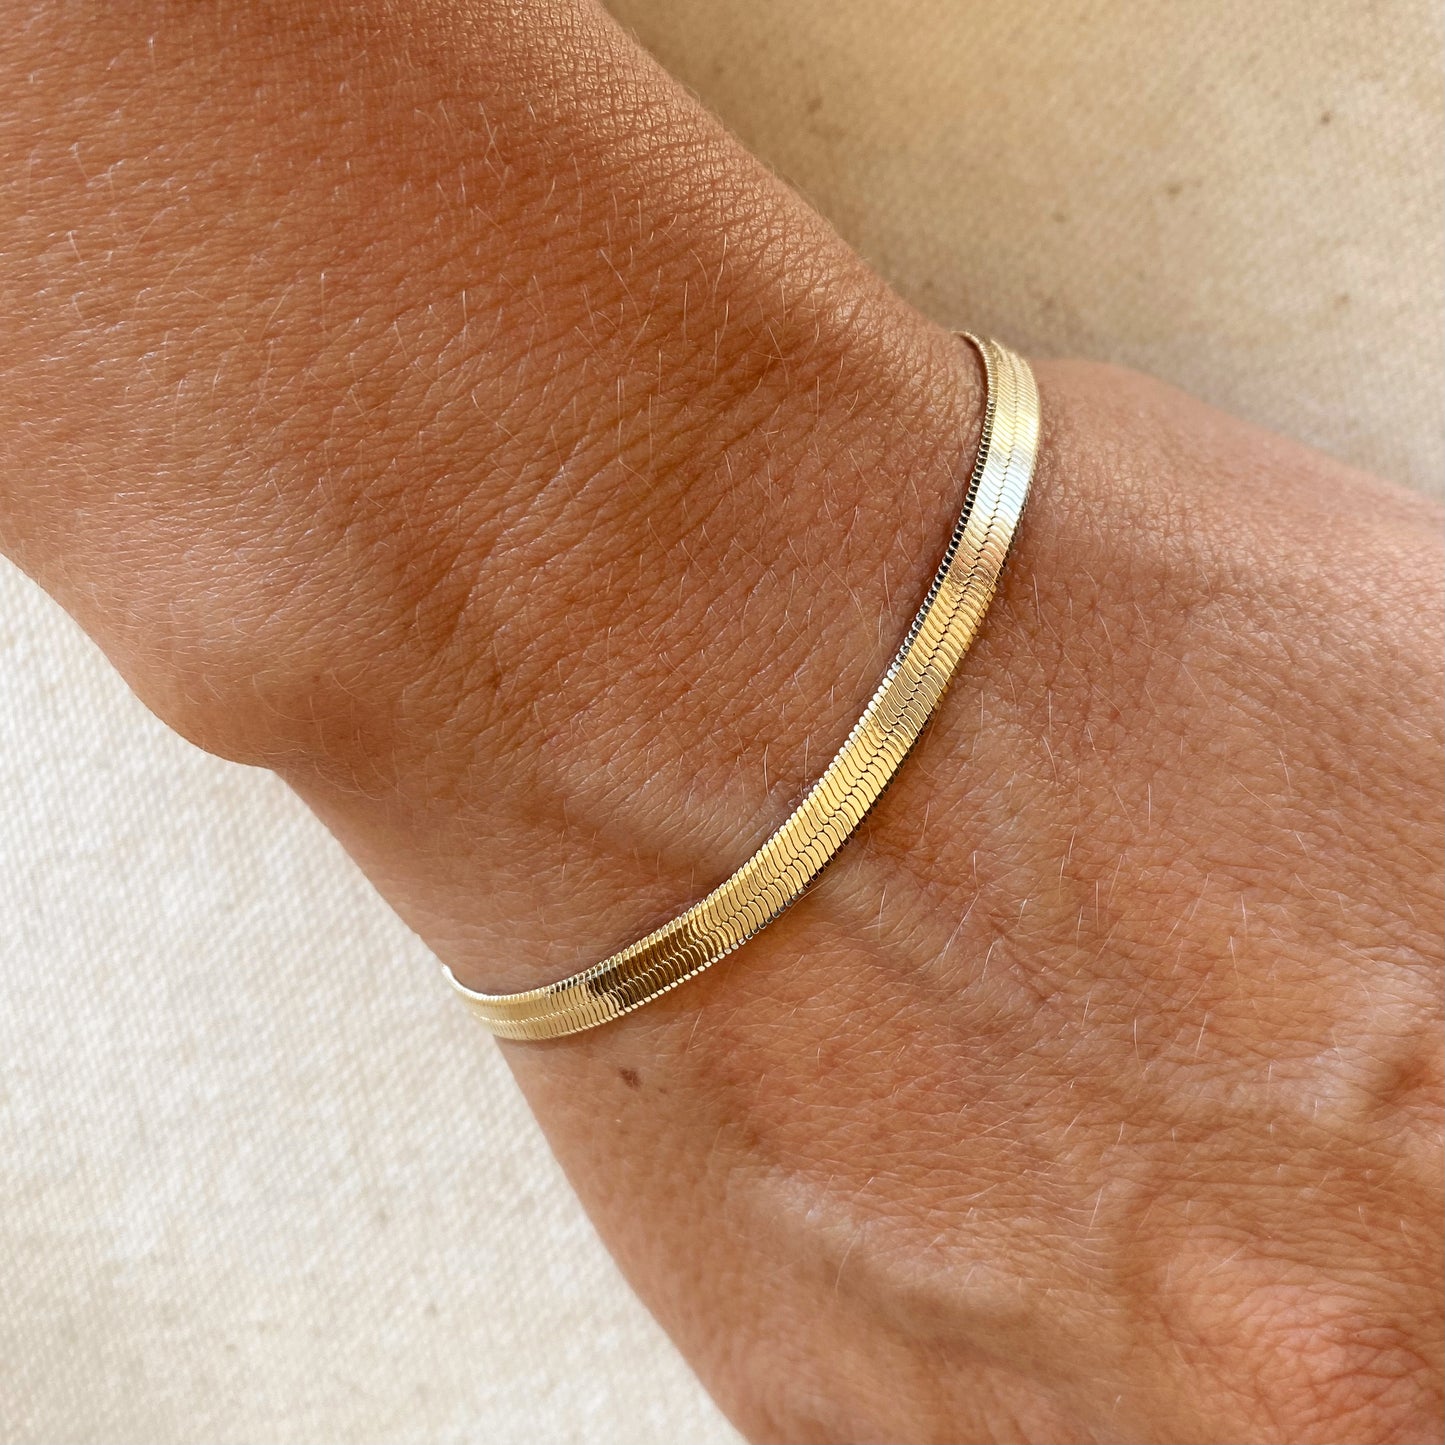 GoldFi 18k Gold Filled 4mm Herringbone Bracelet